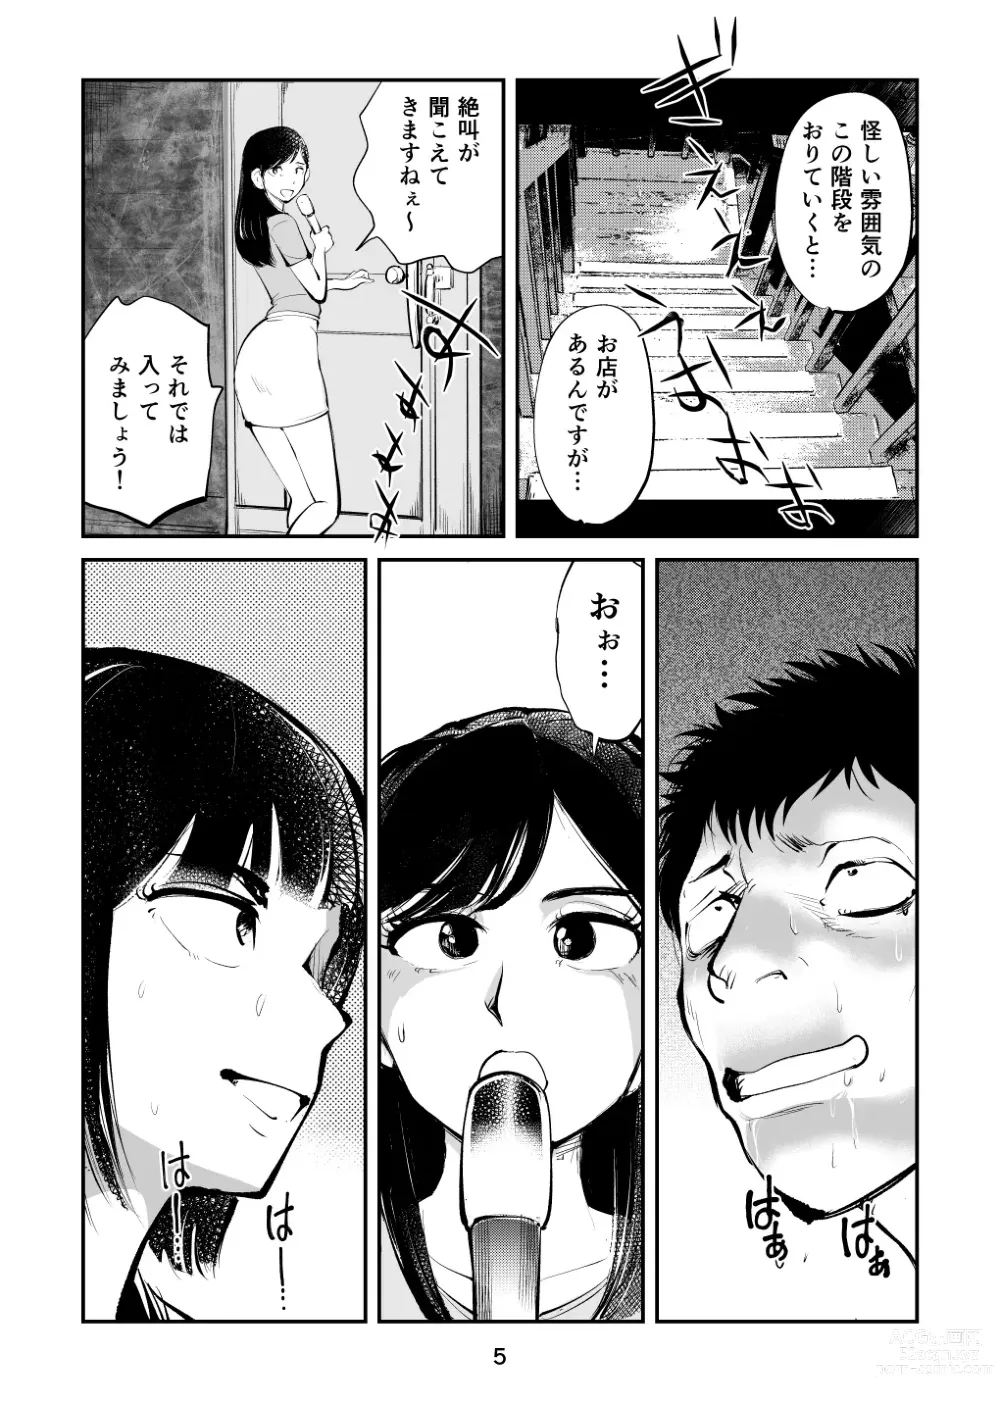 Page 5 of doujinshi Kintama o tsubushita joshi-ana